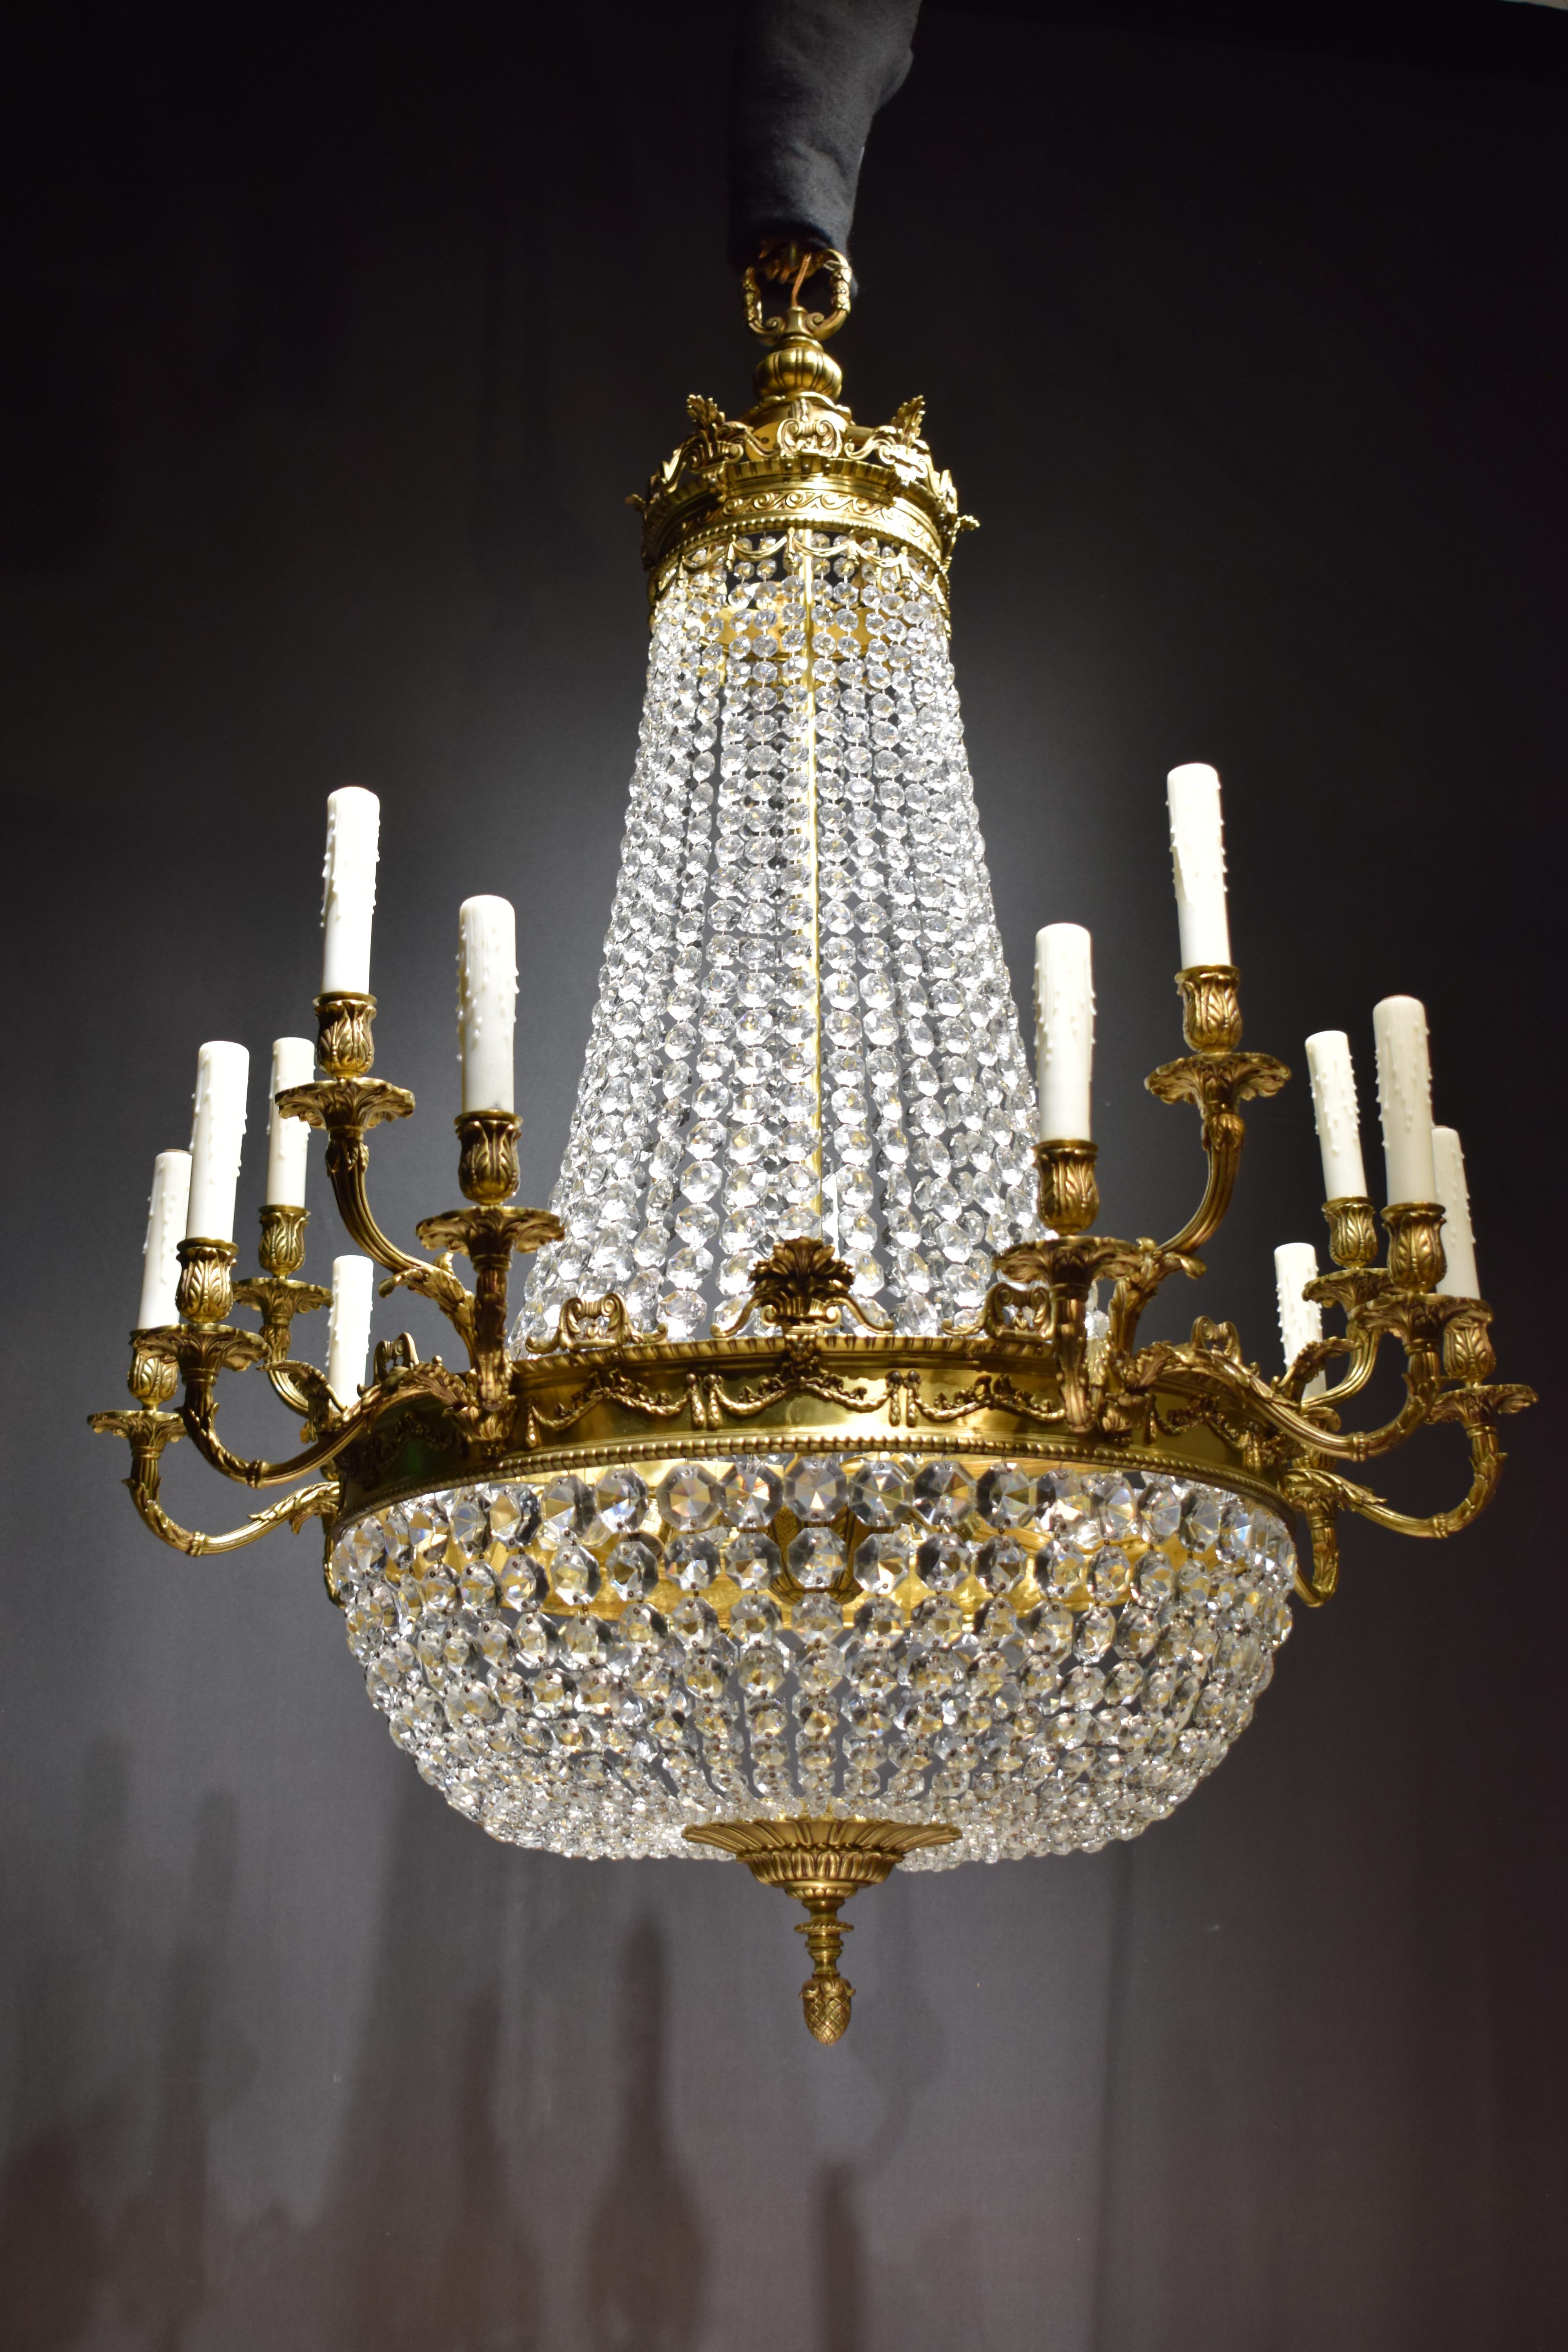 Ein hervorragender Kronleuchter im Louis XVI-Stil aus vergoldeter Bronze und Kristall. Der Hauptkreis ist mit Säumen verziert, die fünf Gruppen von drei Armen bilden. Die achteckigen Ketten bilden den birnenförmigen Körper. Stilisierte Krone aus